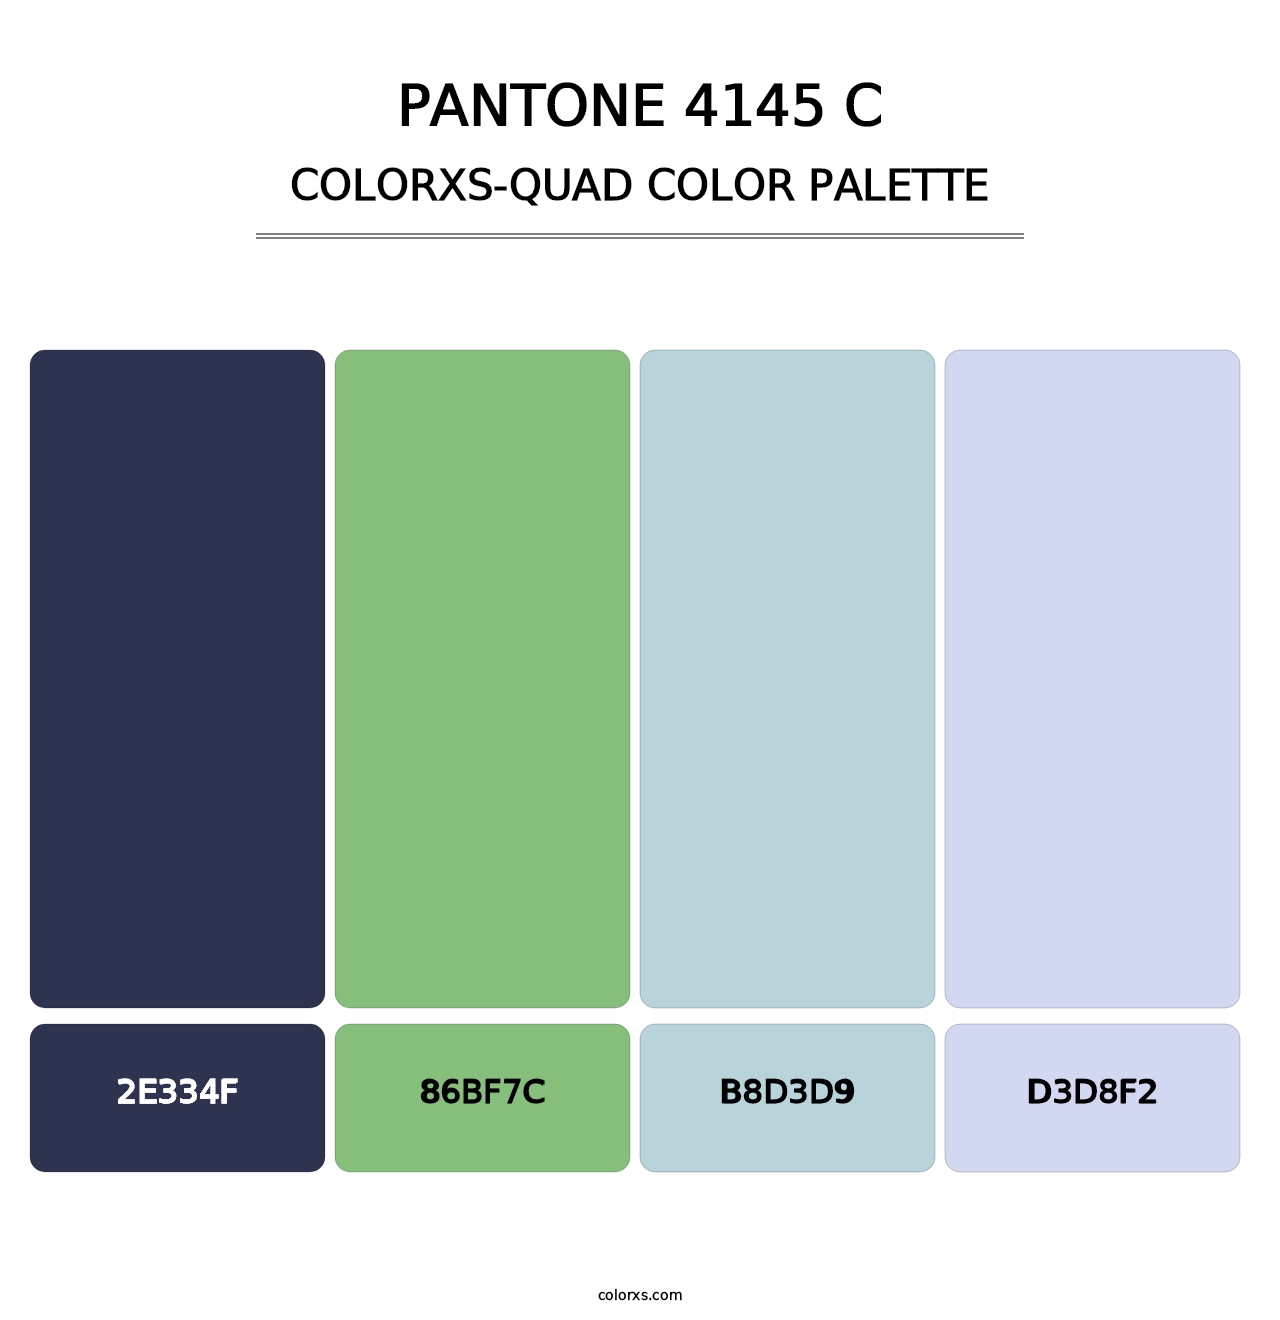 PANTONE 4145 C - Colorxs Quad Palette